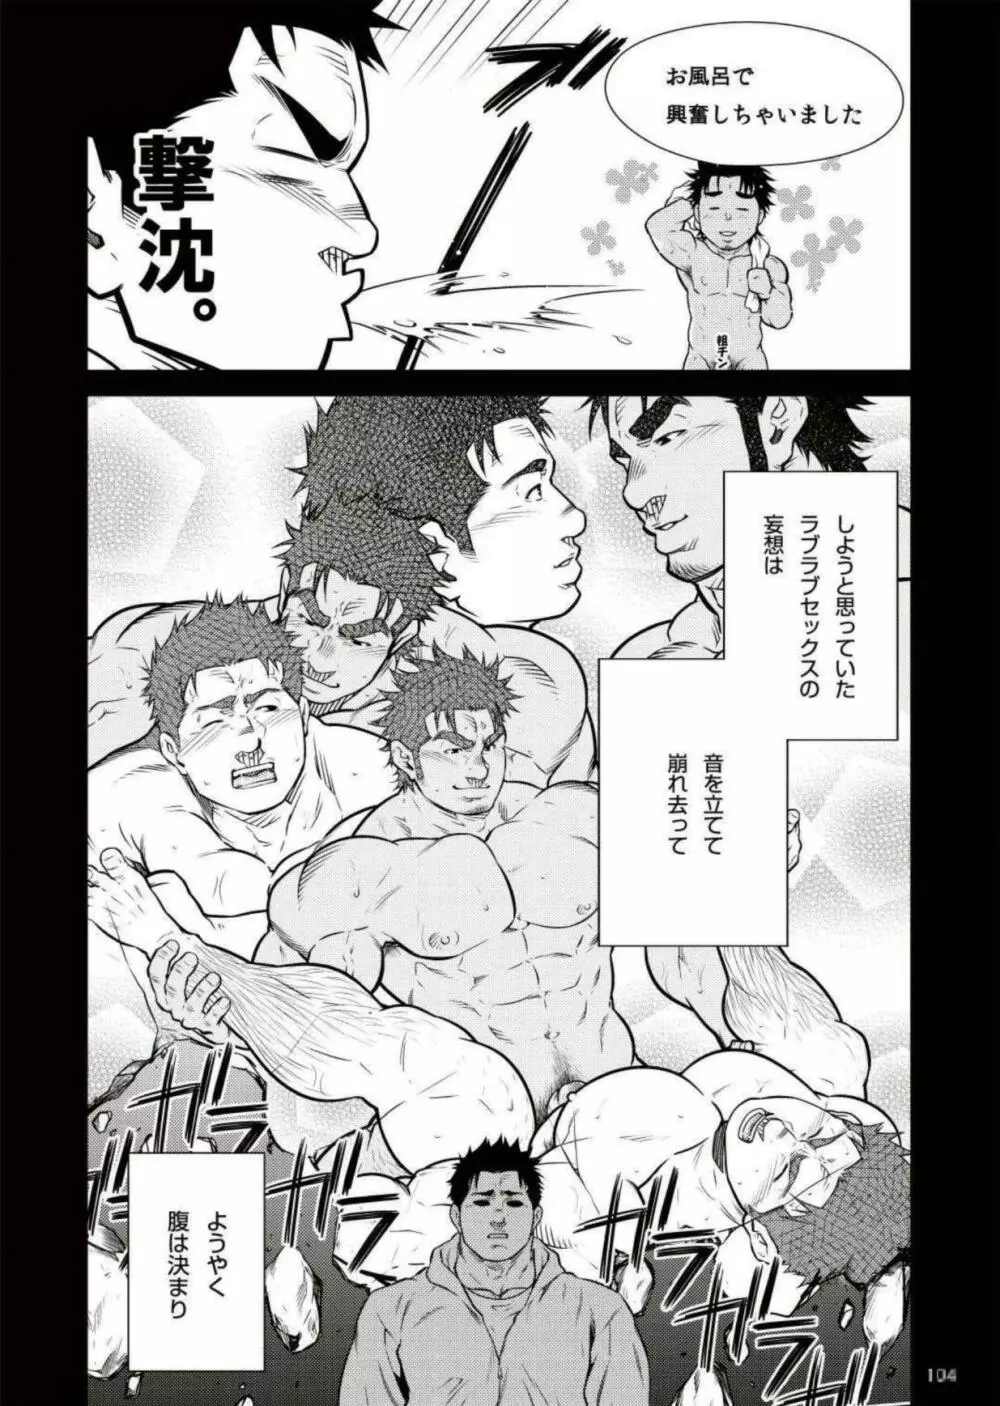 Terujirou - 晃次郎 - Badi Bʌ́di (バディ) 111 (May 2015) Page.8